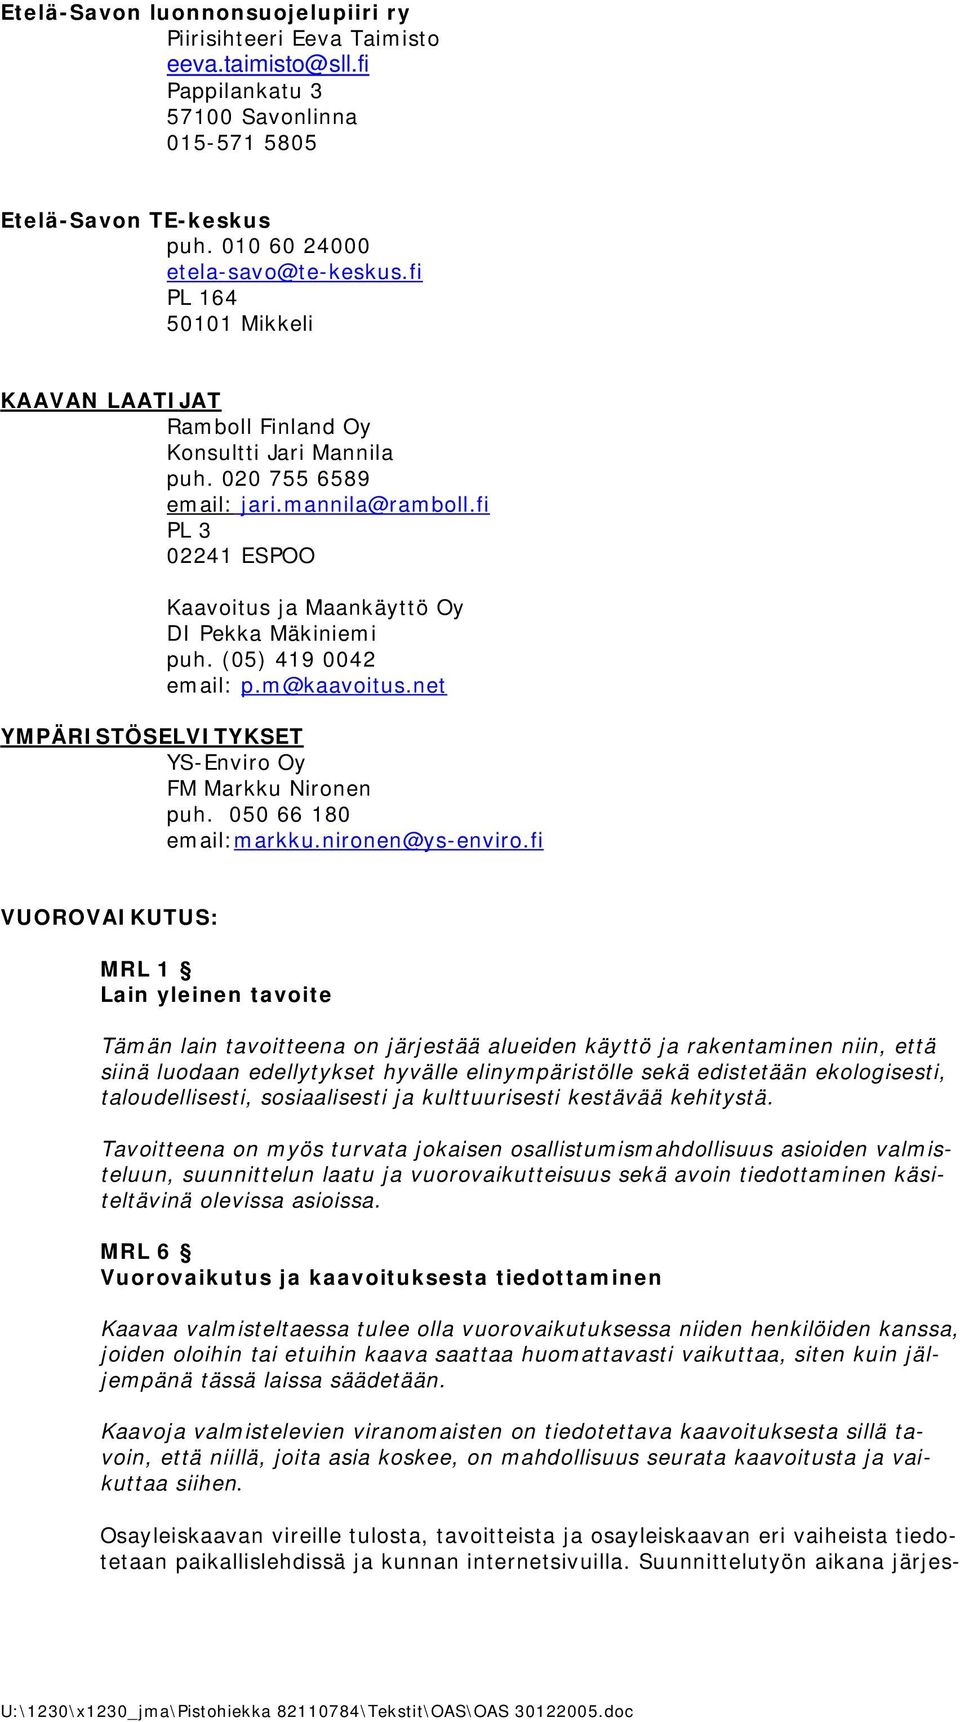 (05) 419 0042 email: p.m@kaavoitus.net YMPÄRISTÖSELVITYKSET YS-Enviro Oy FM Markku Nironen puh. 050 66 180 email:markku.nironen@ys-enviro.